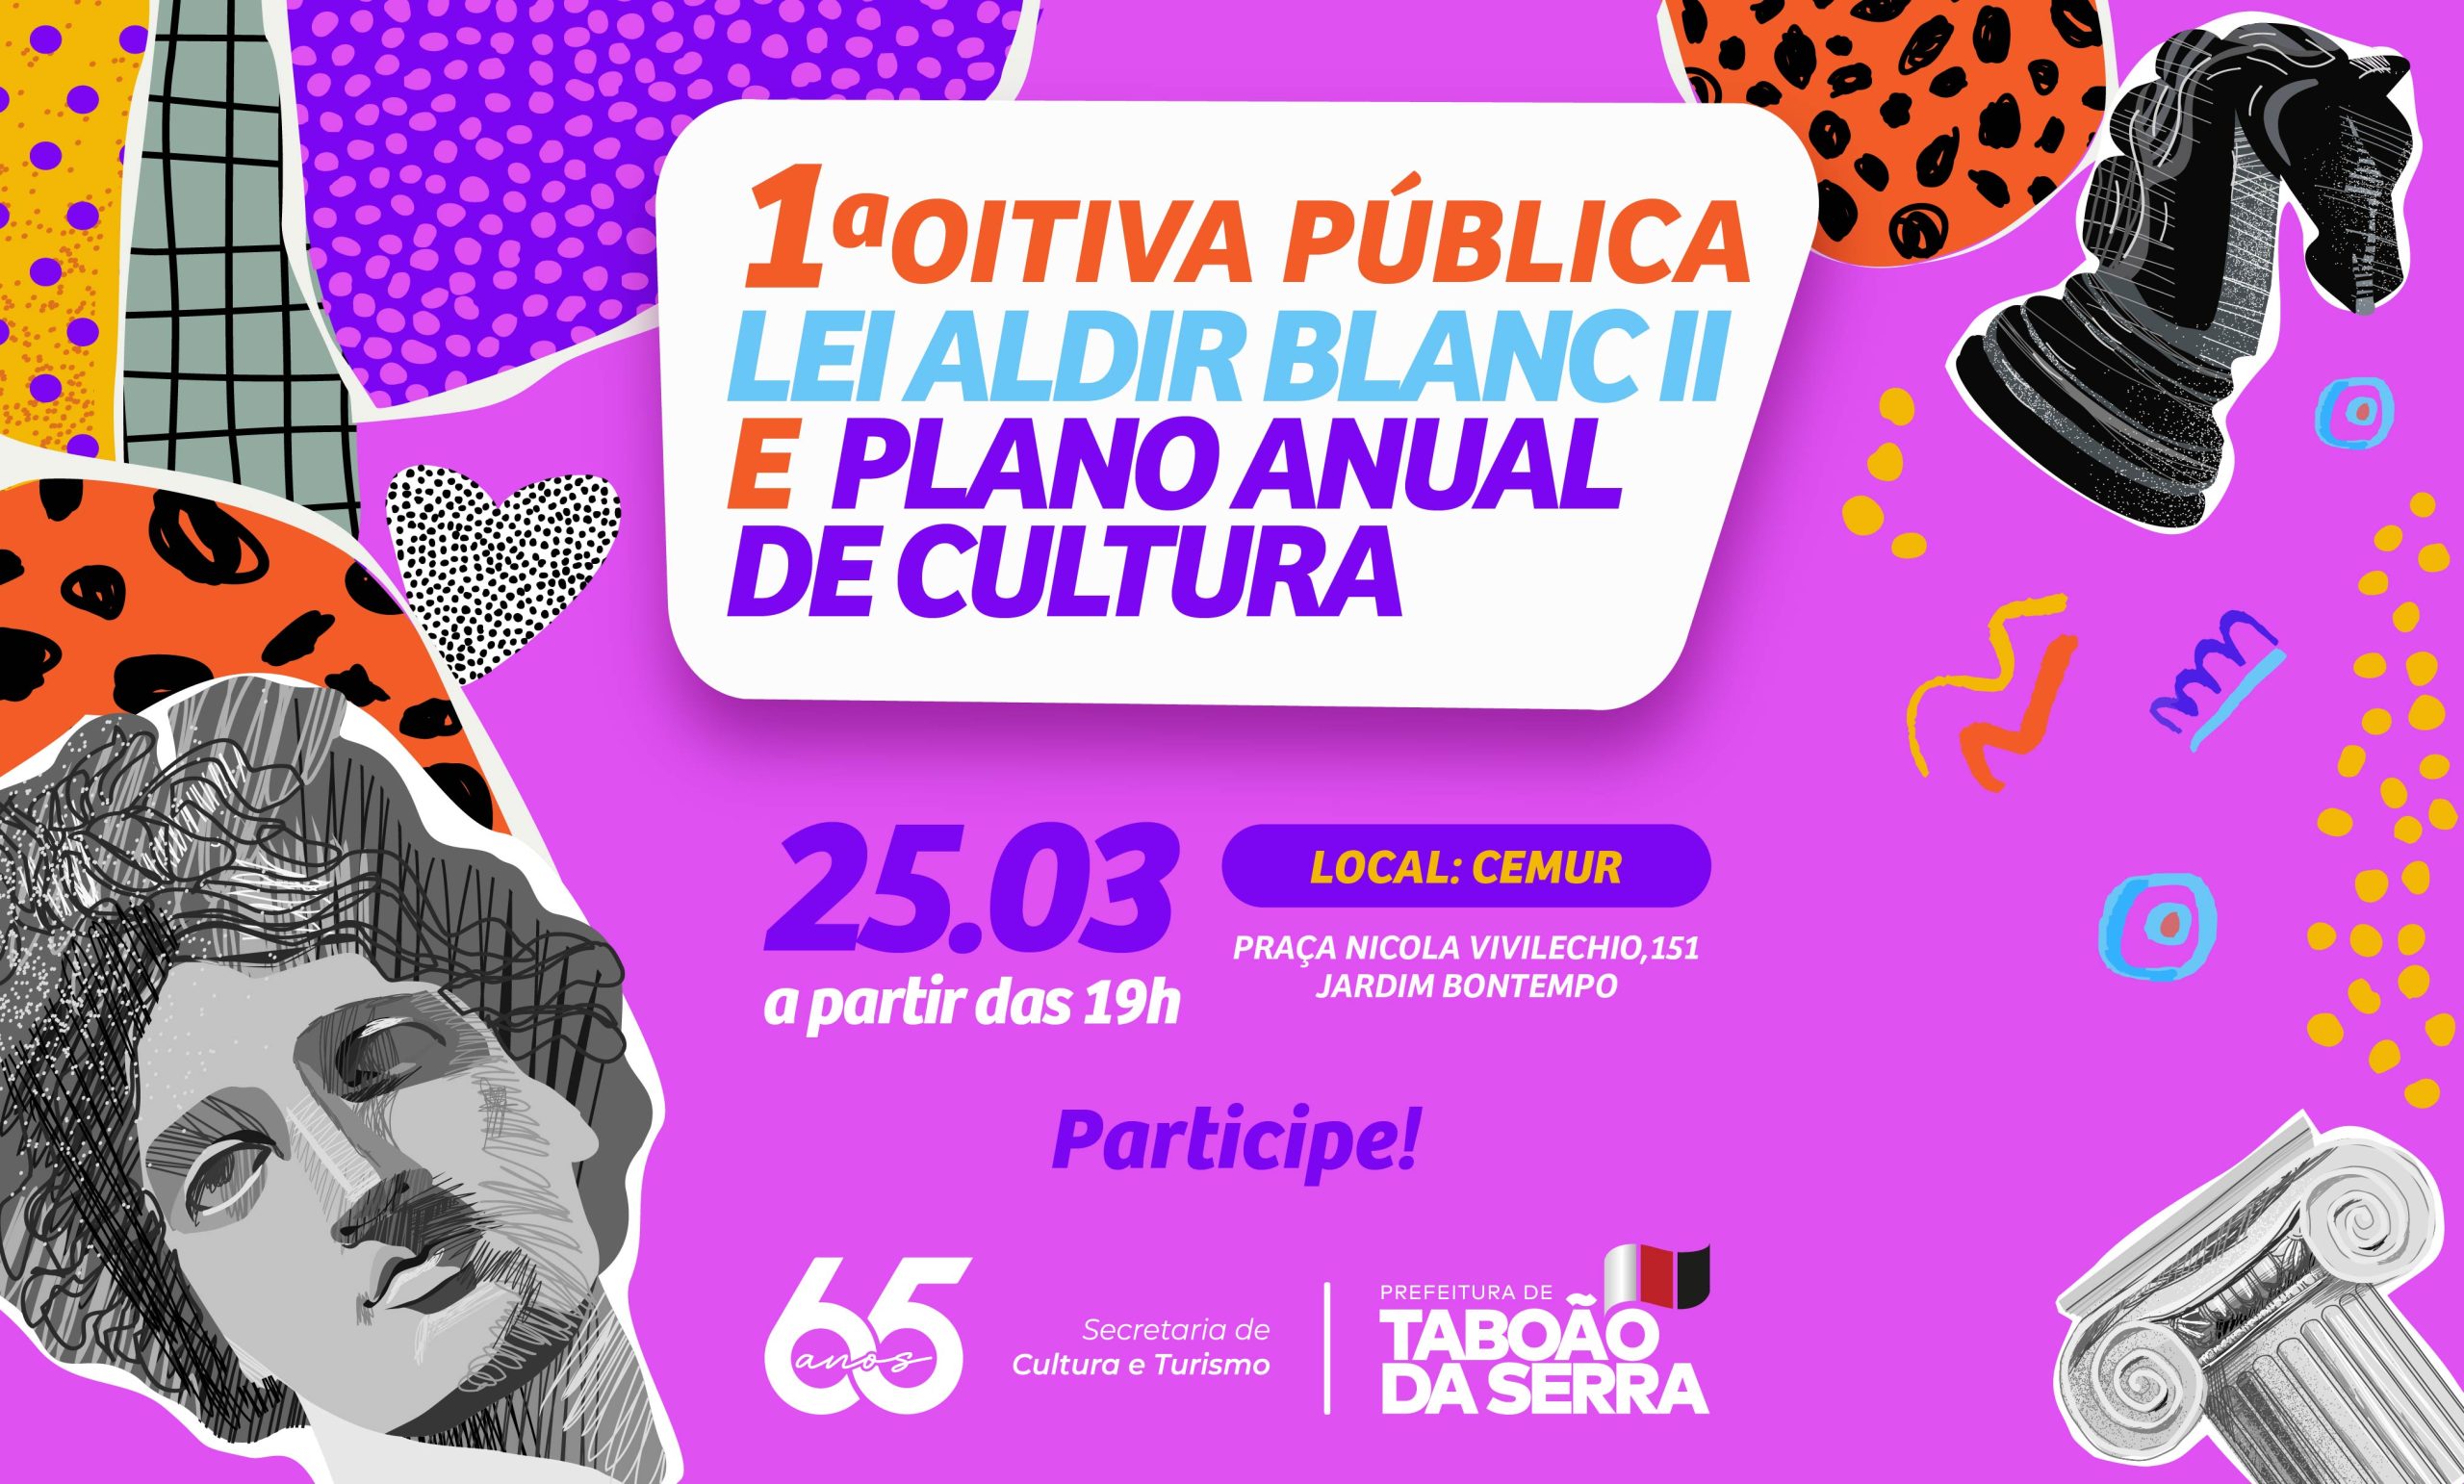 Prefeitura de Taboão da Serra promove 1ª Oitiva Pública da Lei Aldir Blanc II e do Plano Anual de Cultura